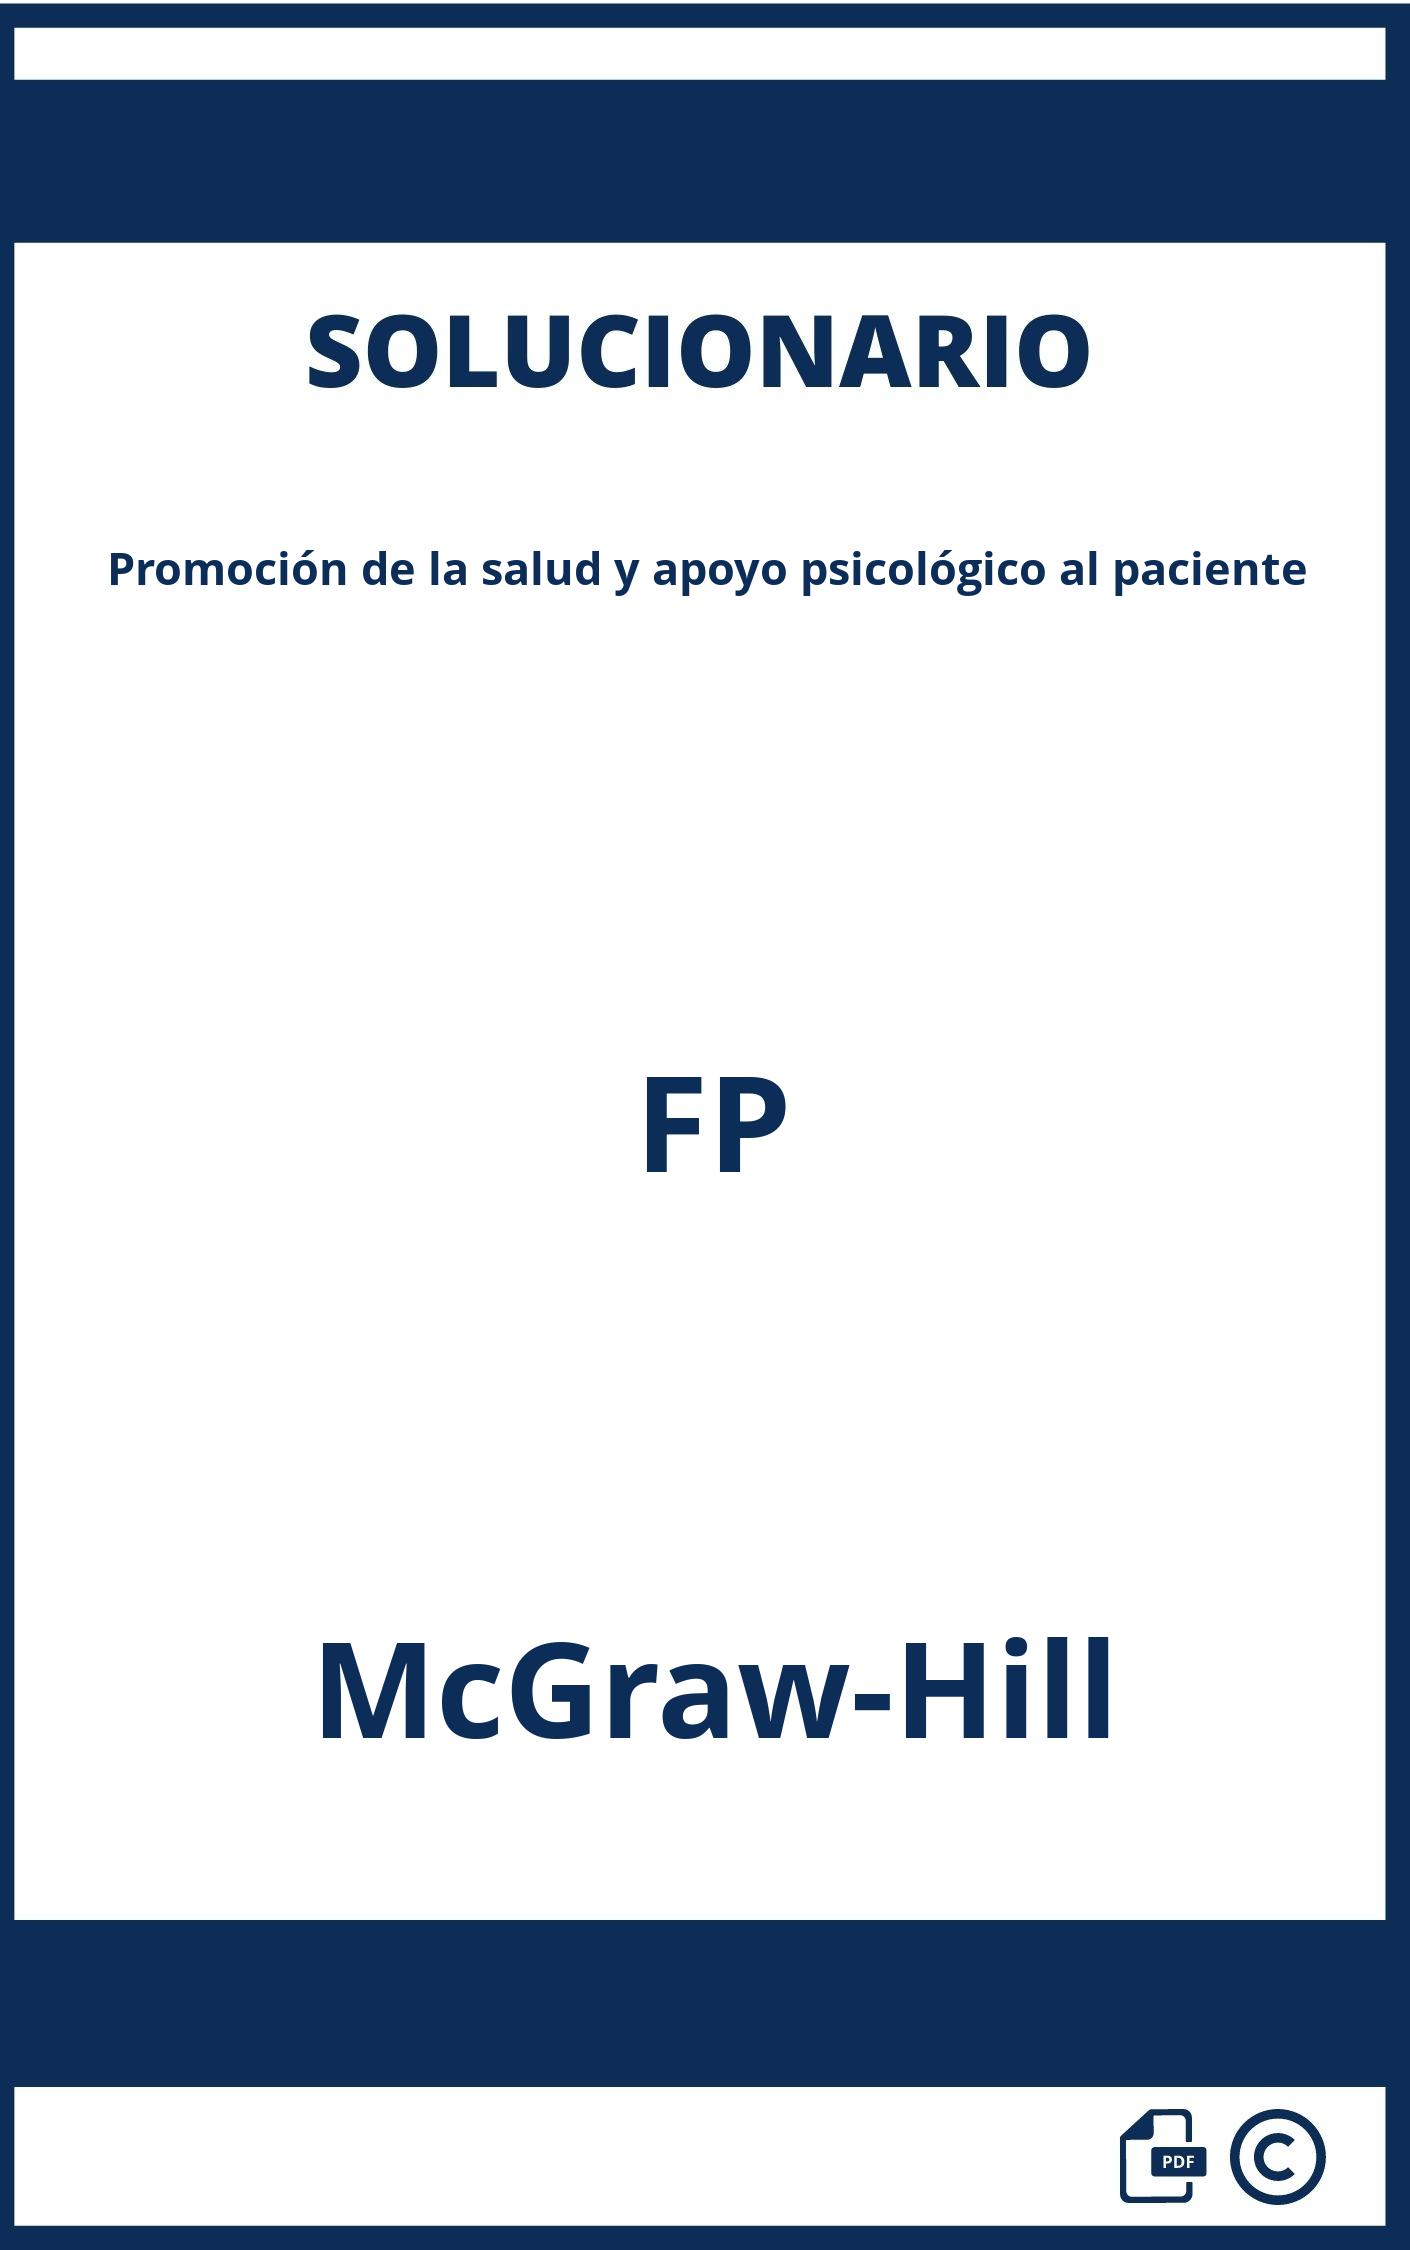 Solucionario Promoción de la salud y apoyo psicológico al paciente FP McGraw-Hill